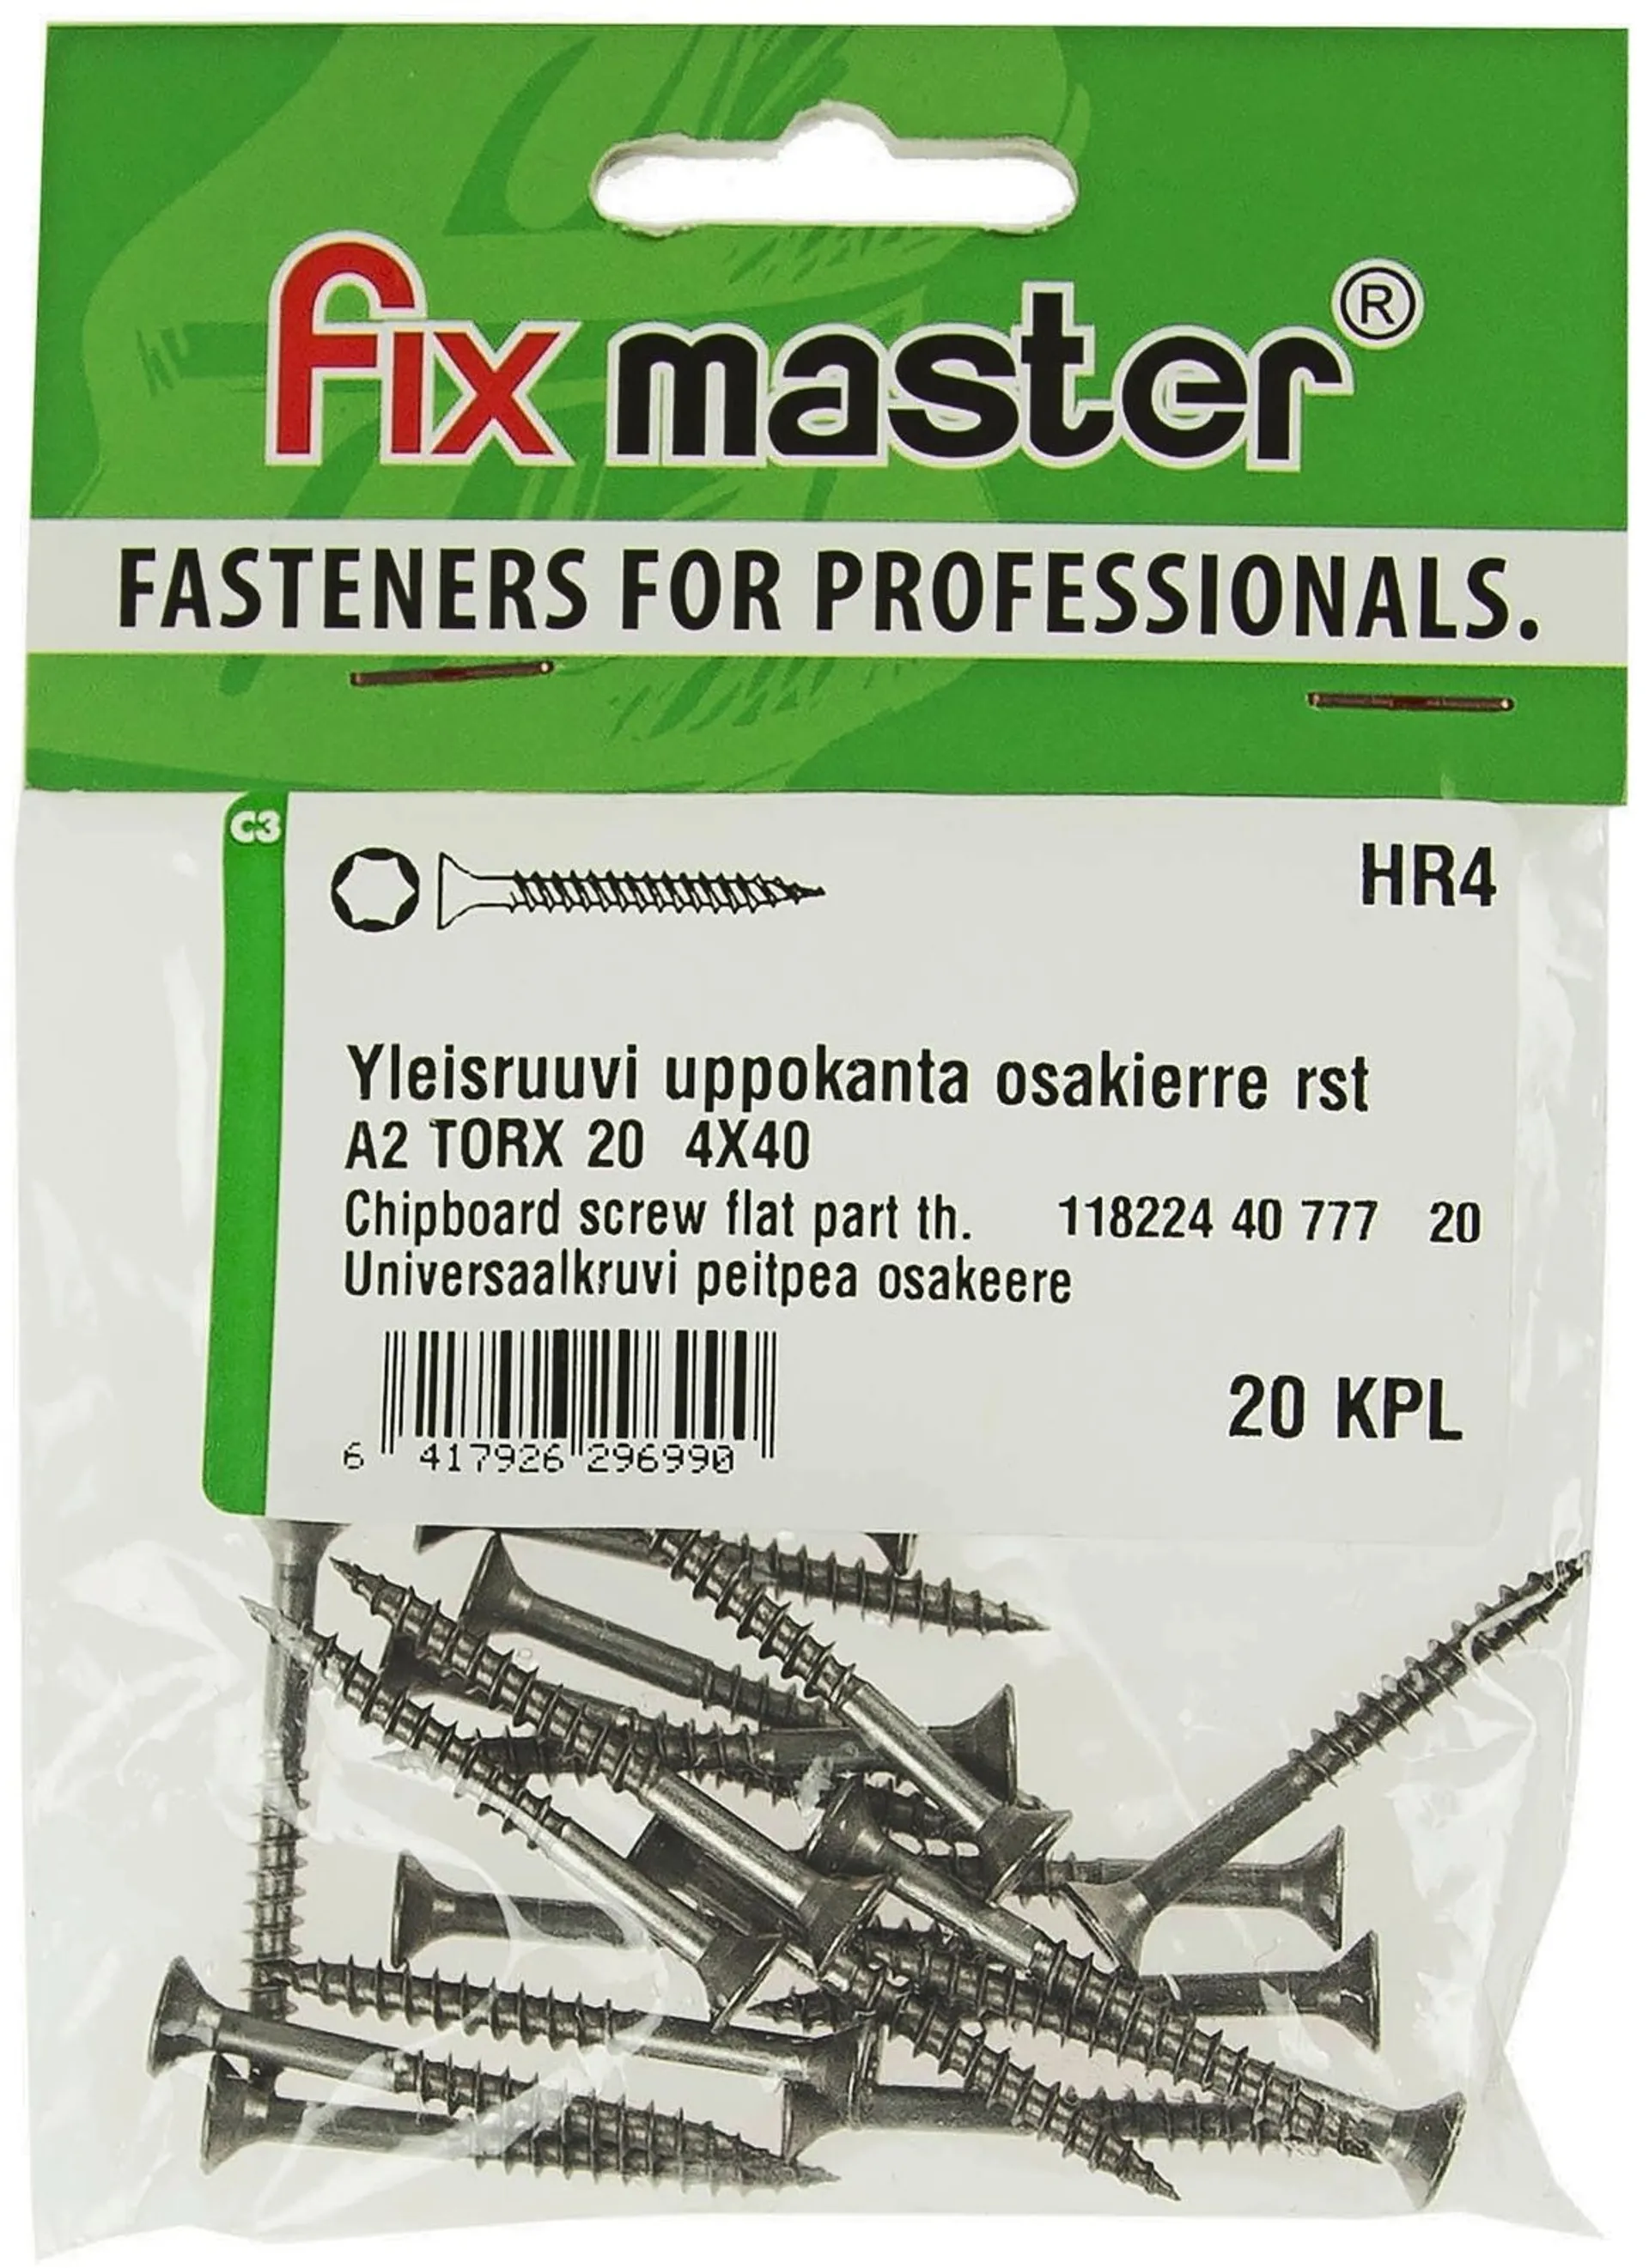 Fix Master yleisruuvi uppokanta osakierre 4X40 A2 torx20 20kpl